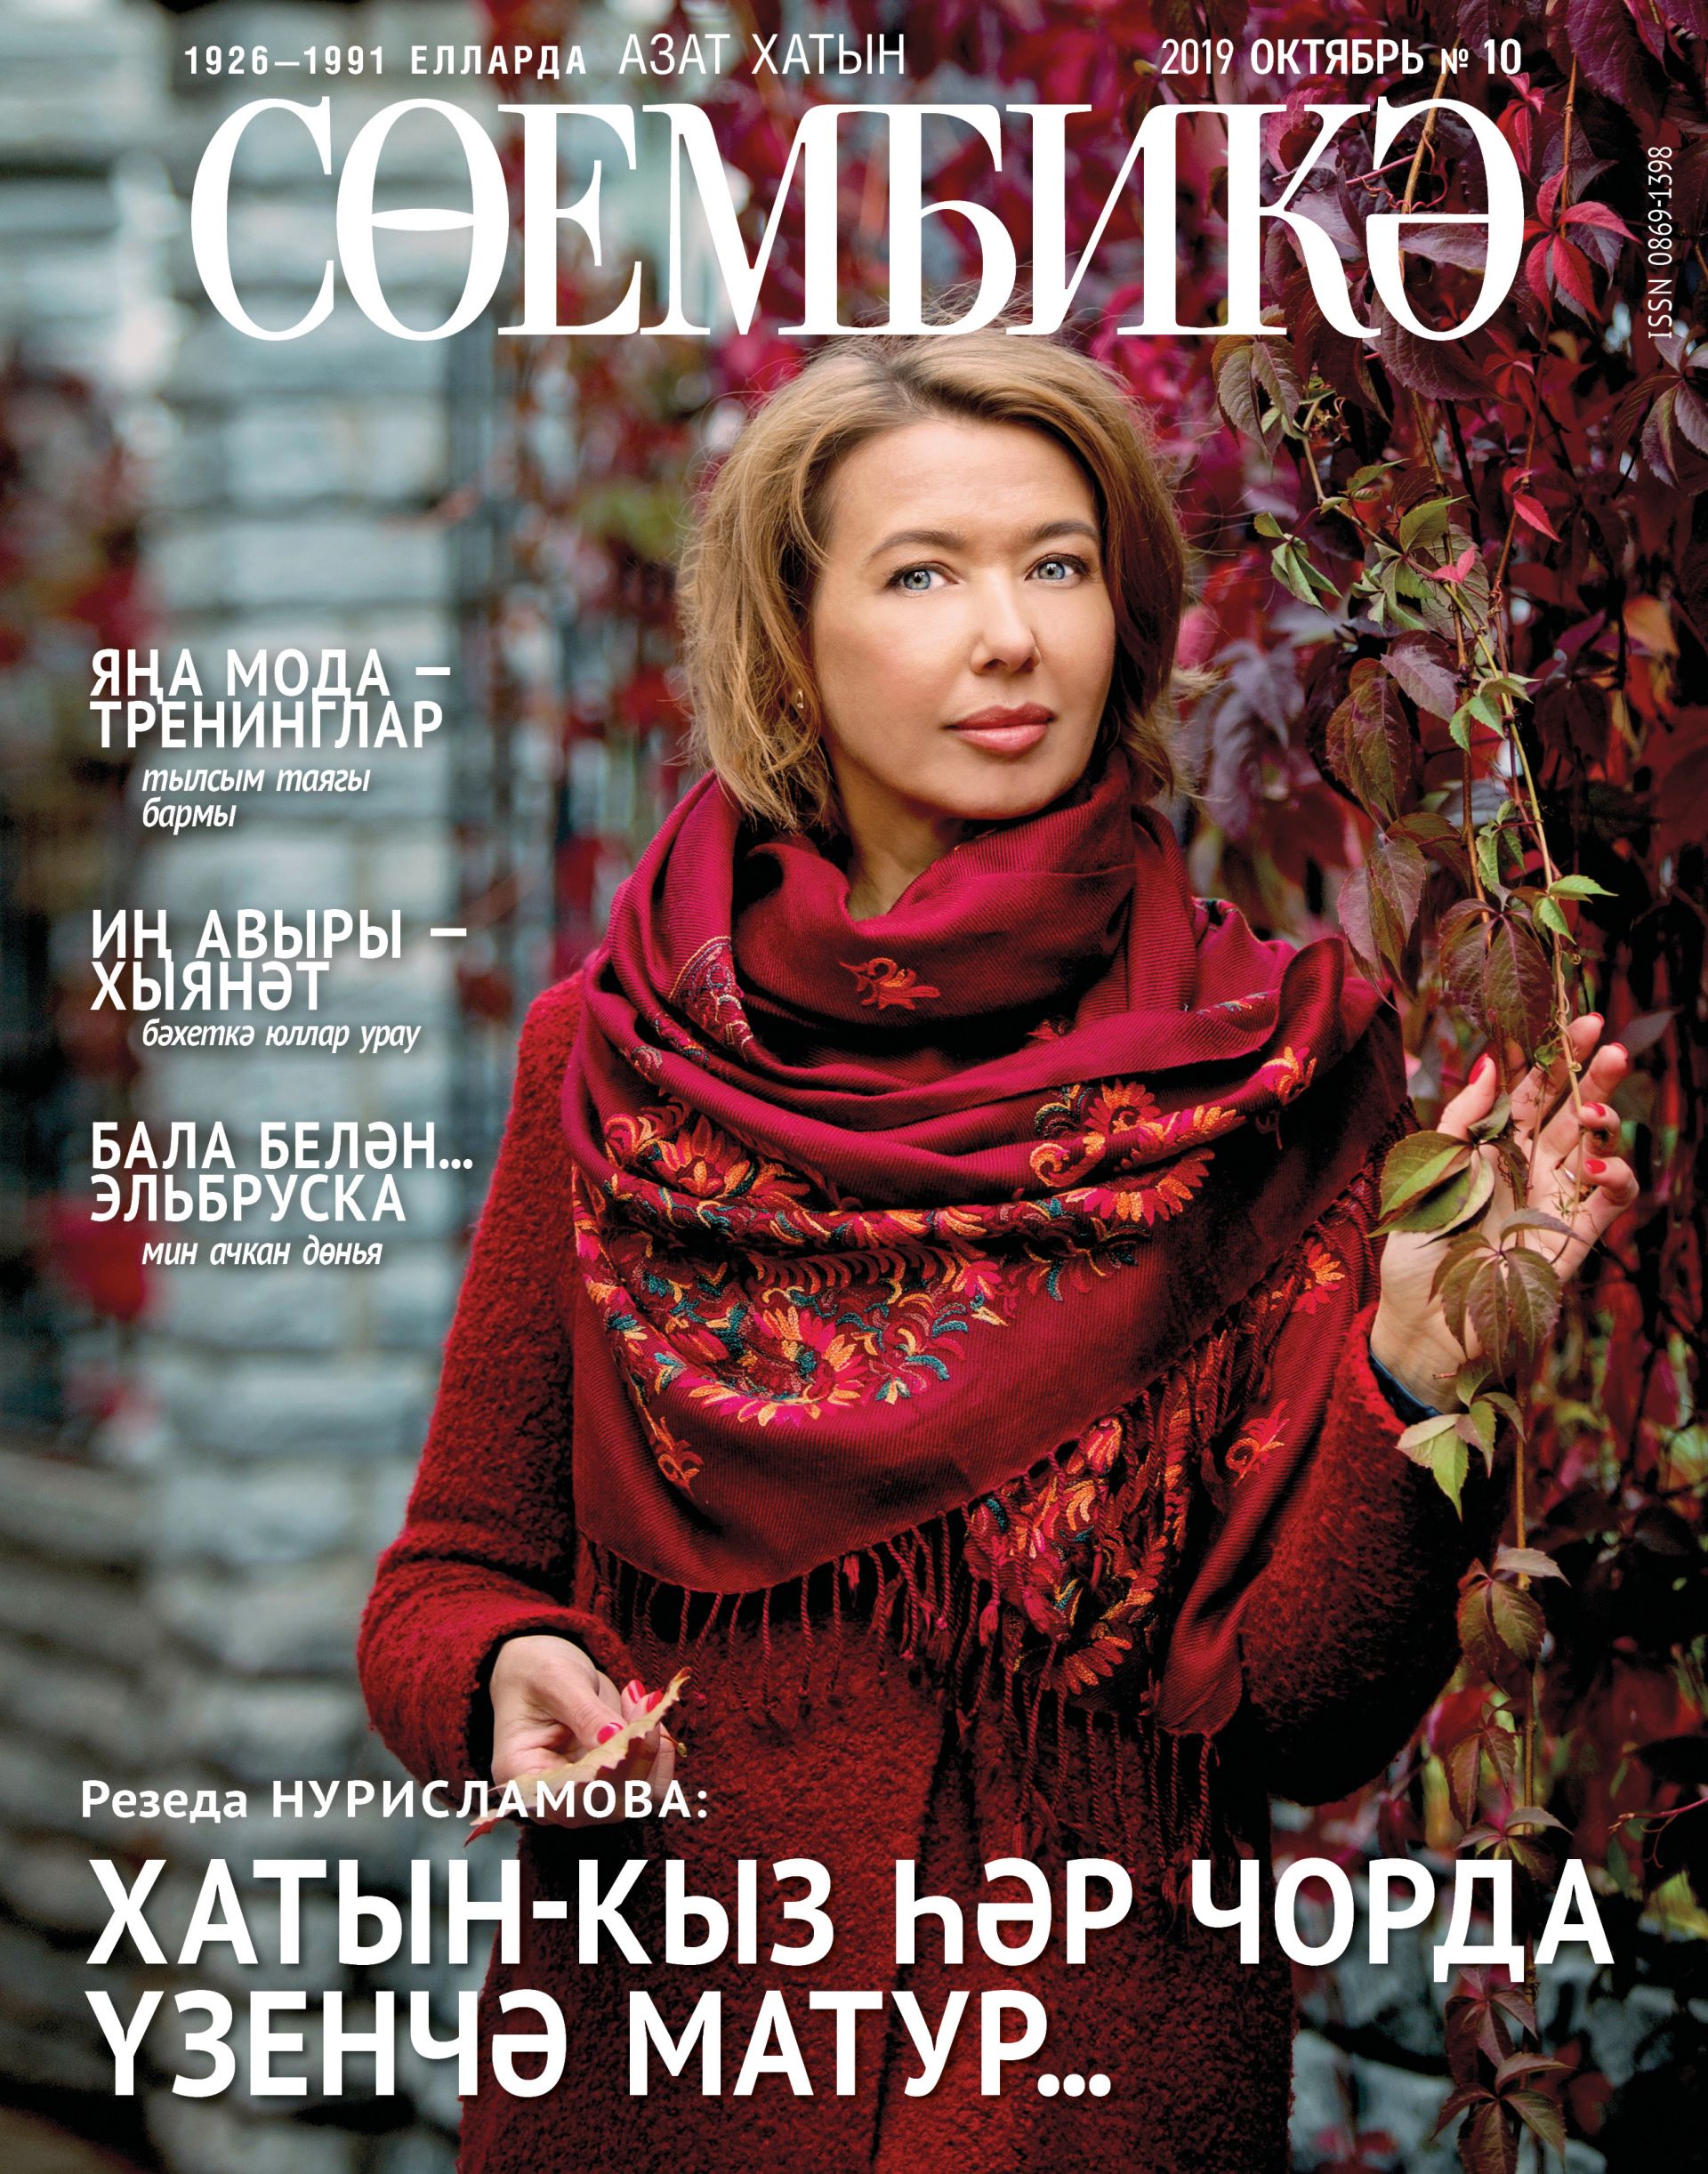 Обложка журнала Октябрь